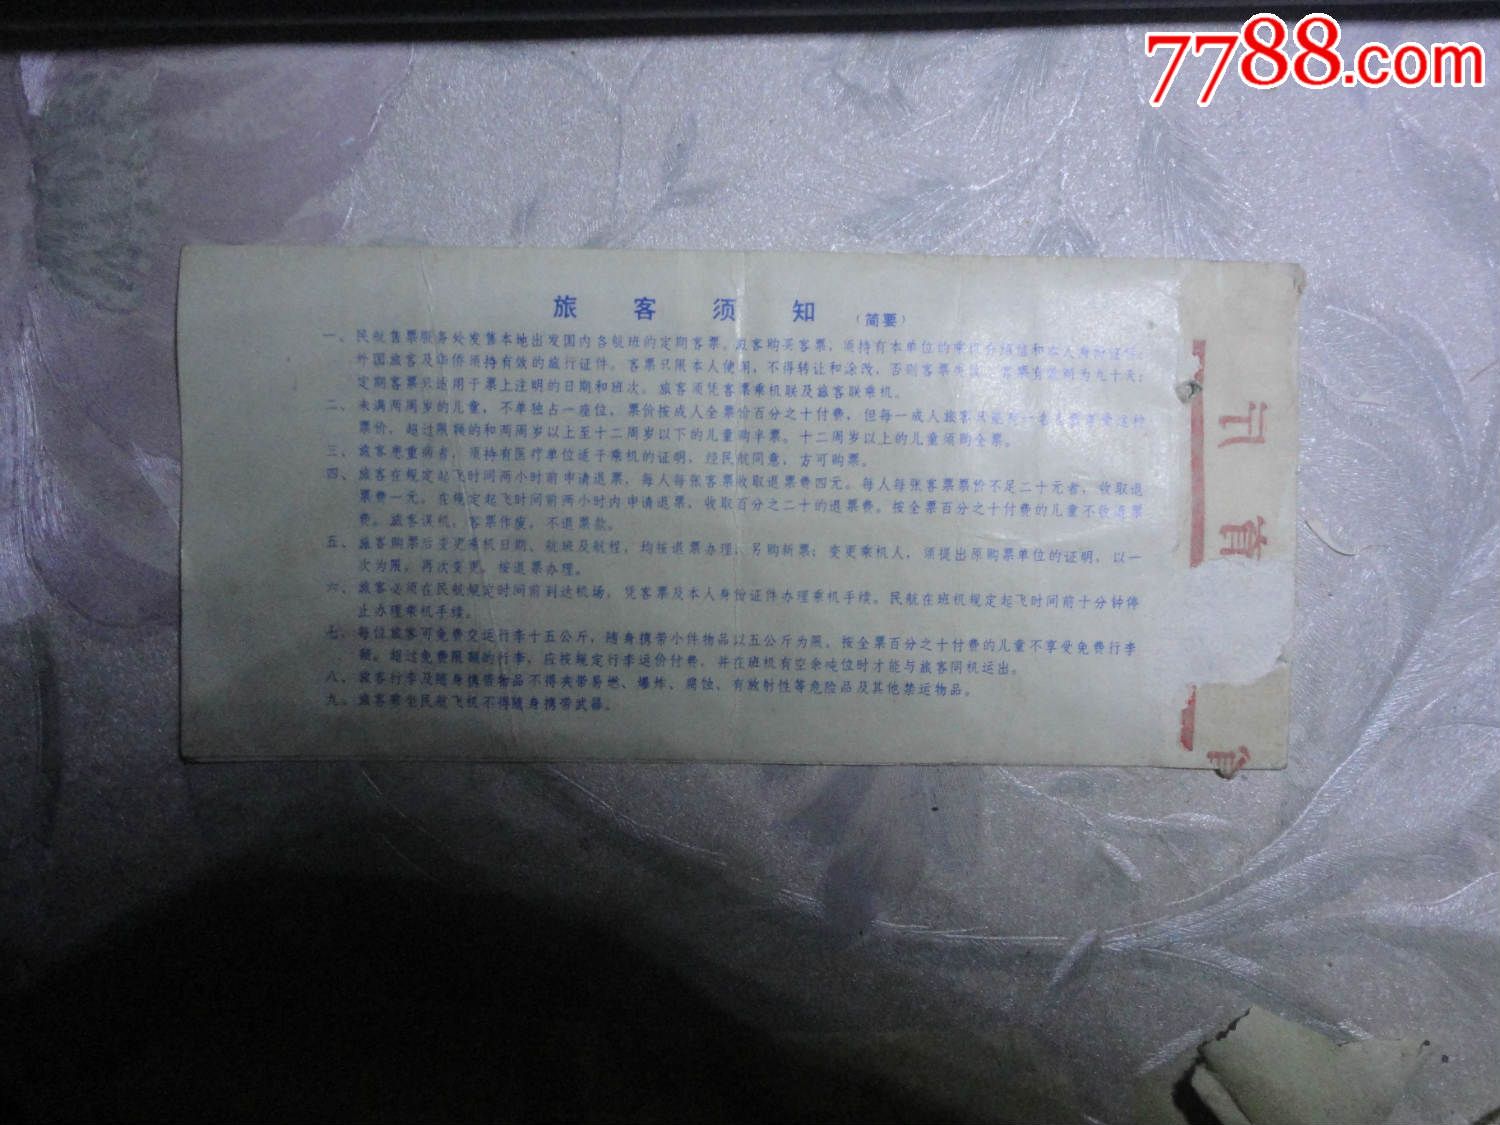 中国民航飞机票:福州--上海-西安1984年_七七八